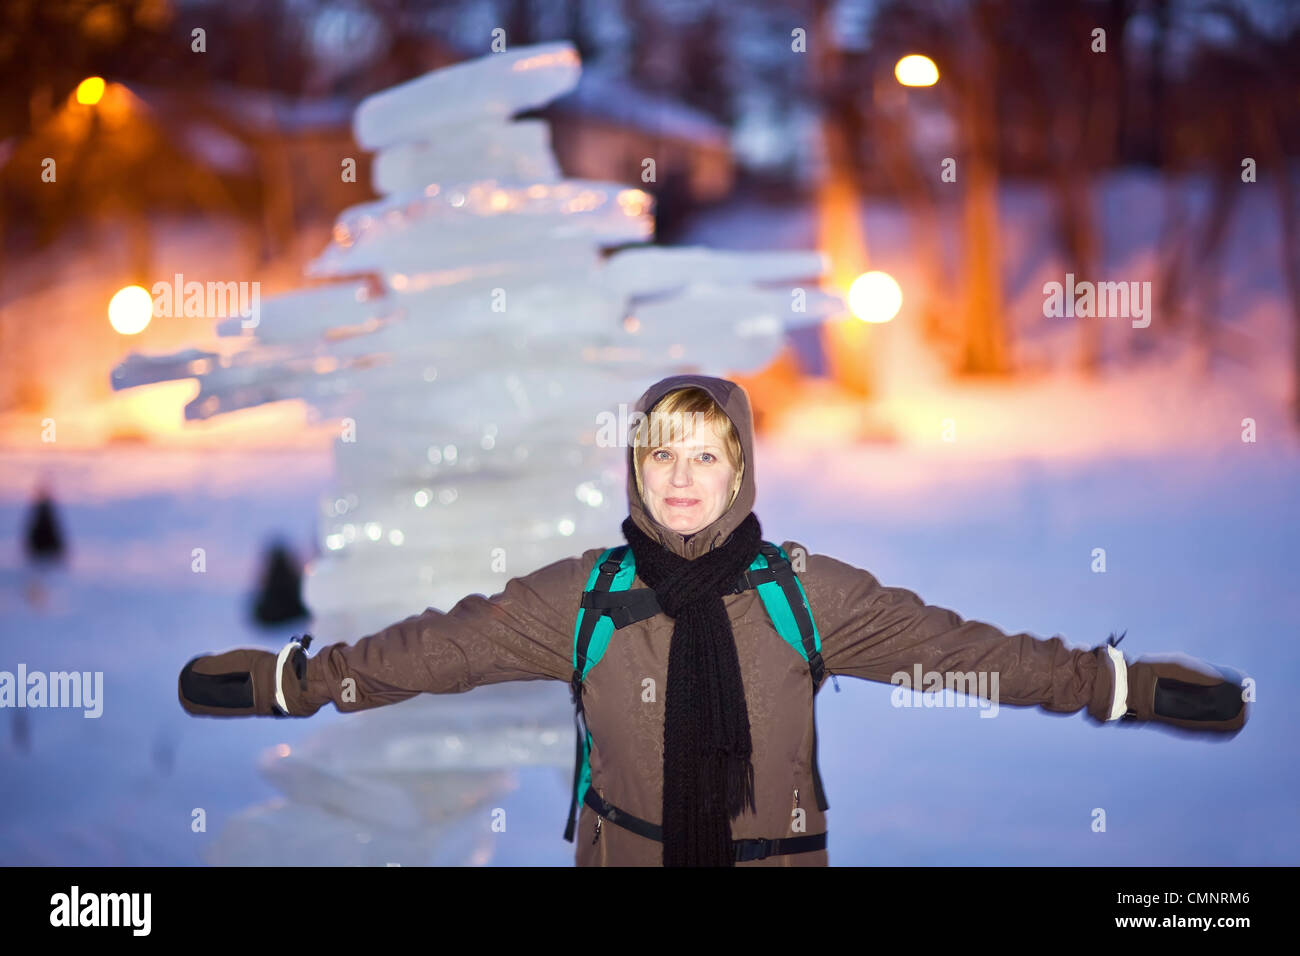 Femme posant devant un inukshuk, sculpture de glace de la rivière Assiniboine, Winnipeg, Manitoba Banque D'Images